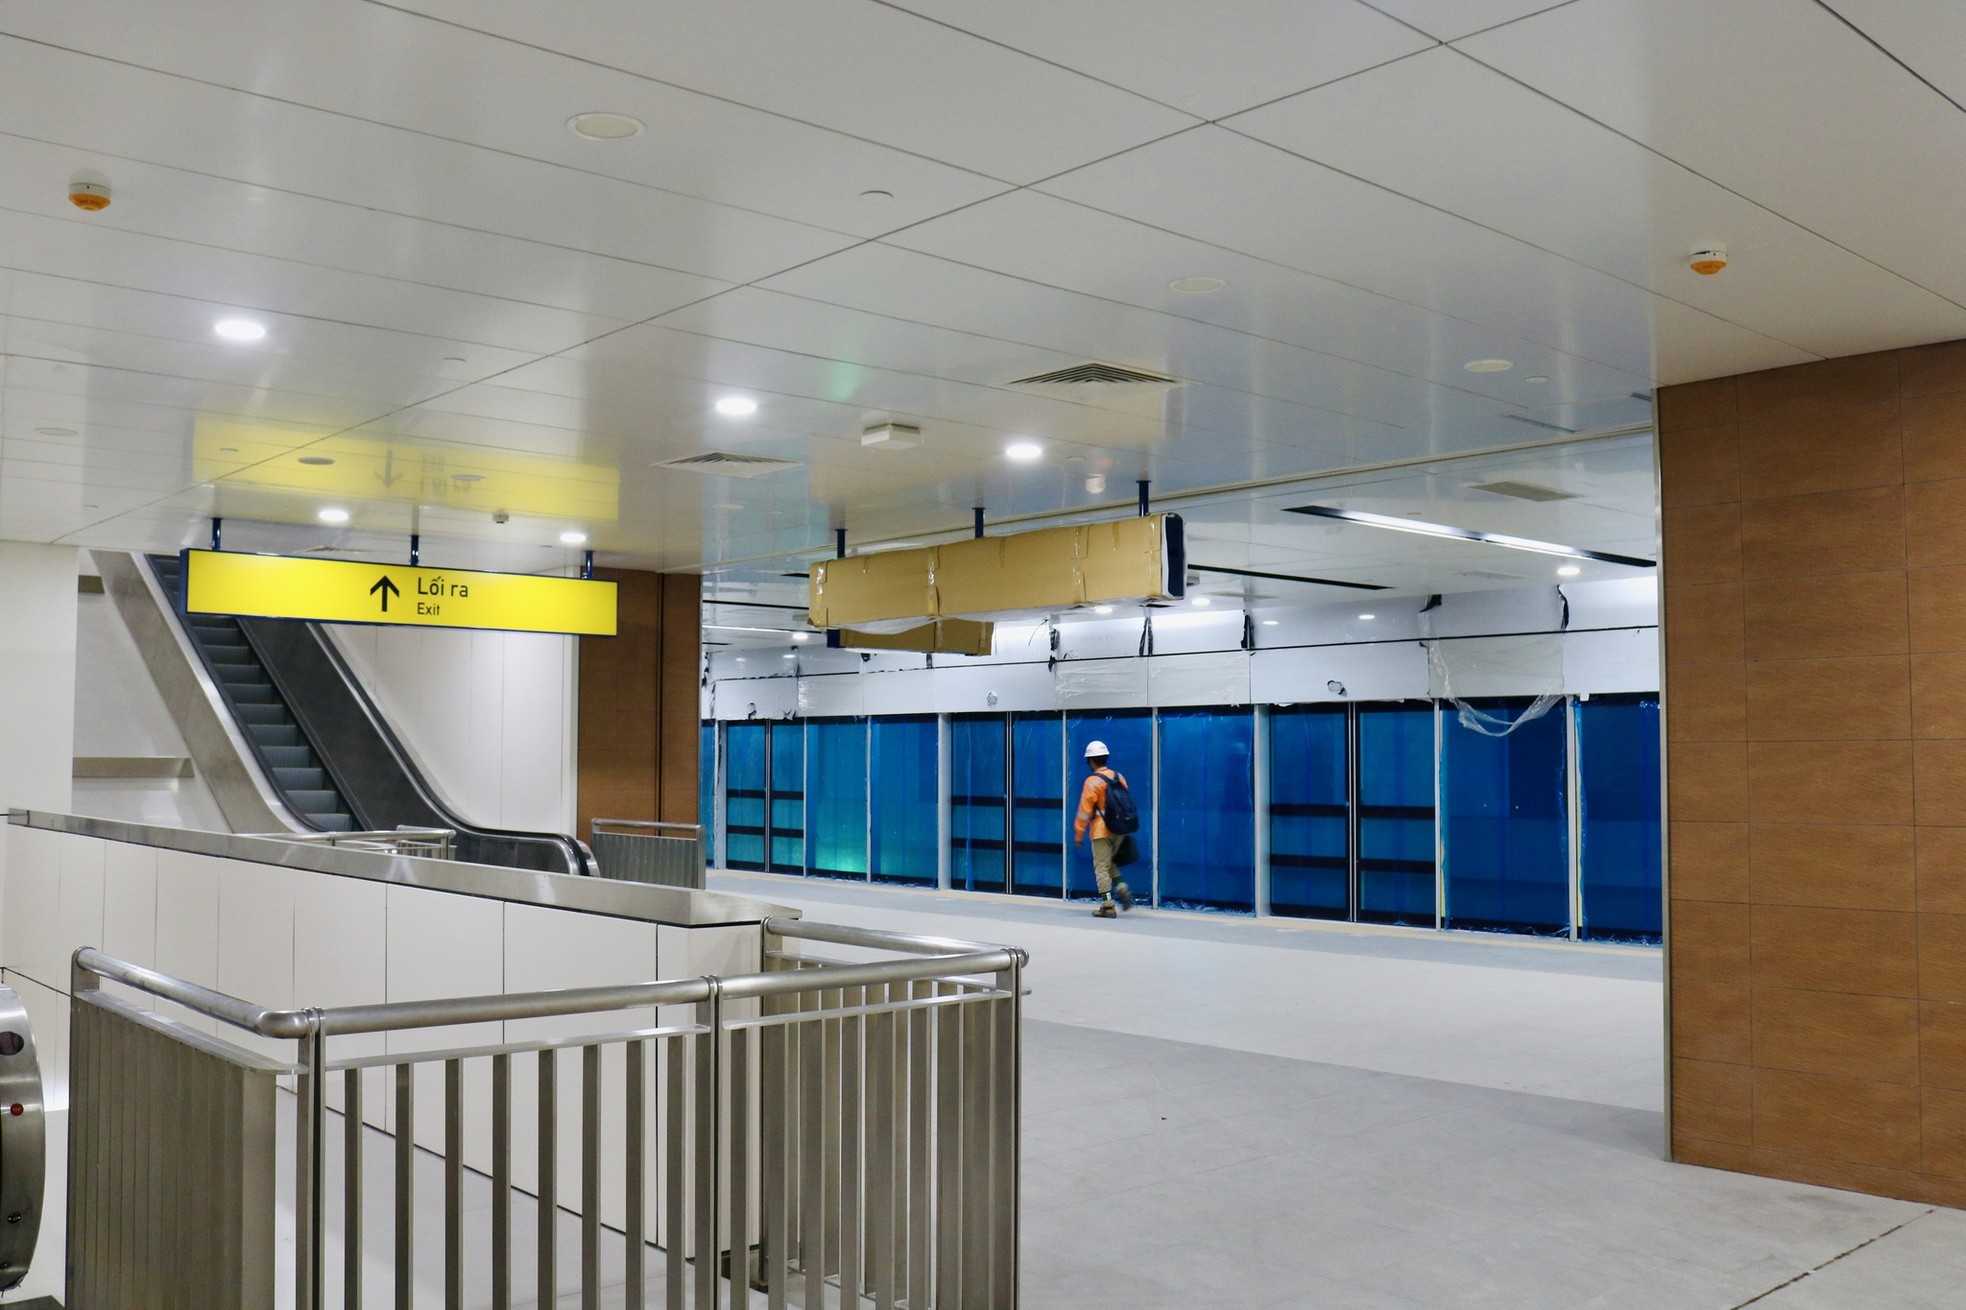 Hình ảnh ga ngầm tuyến metro Bến Thành-Suối Tiên hoàn thiện sau gần 10 năm thi công - Ảnh 10.